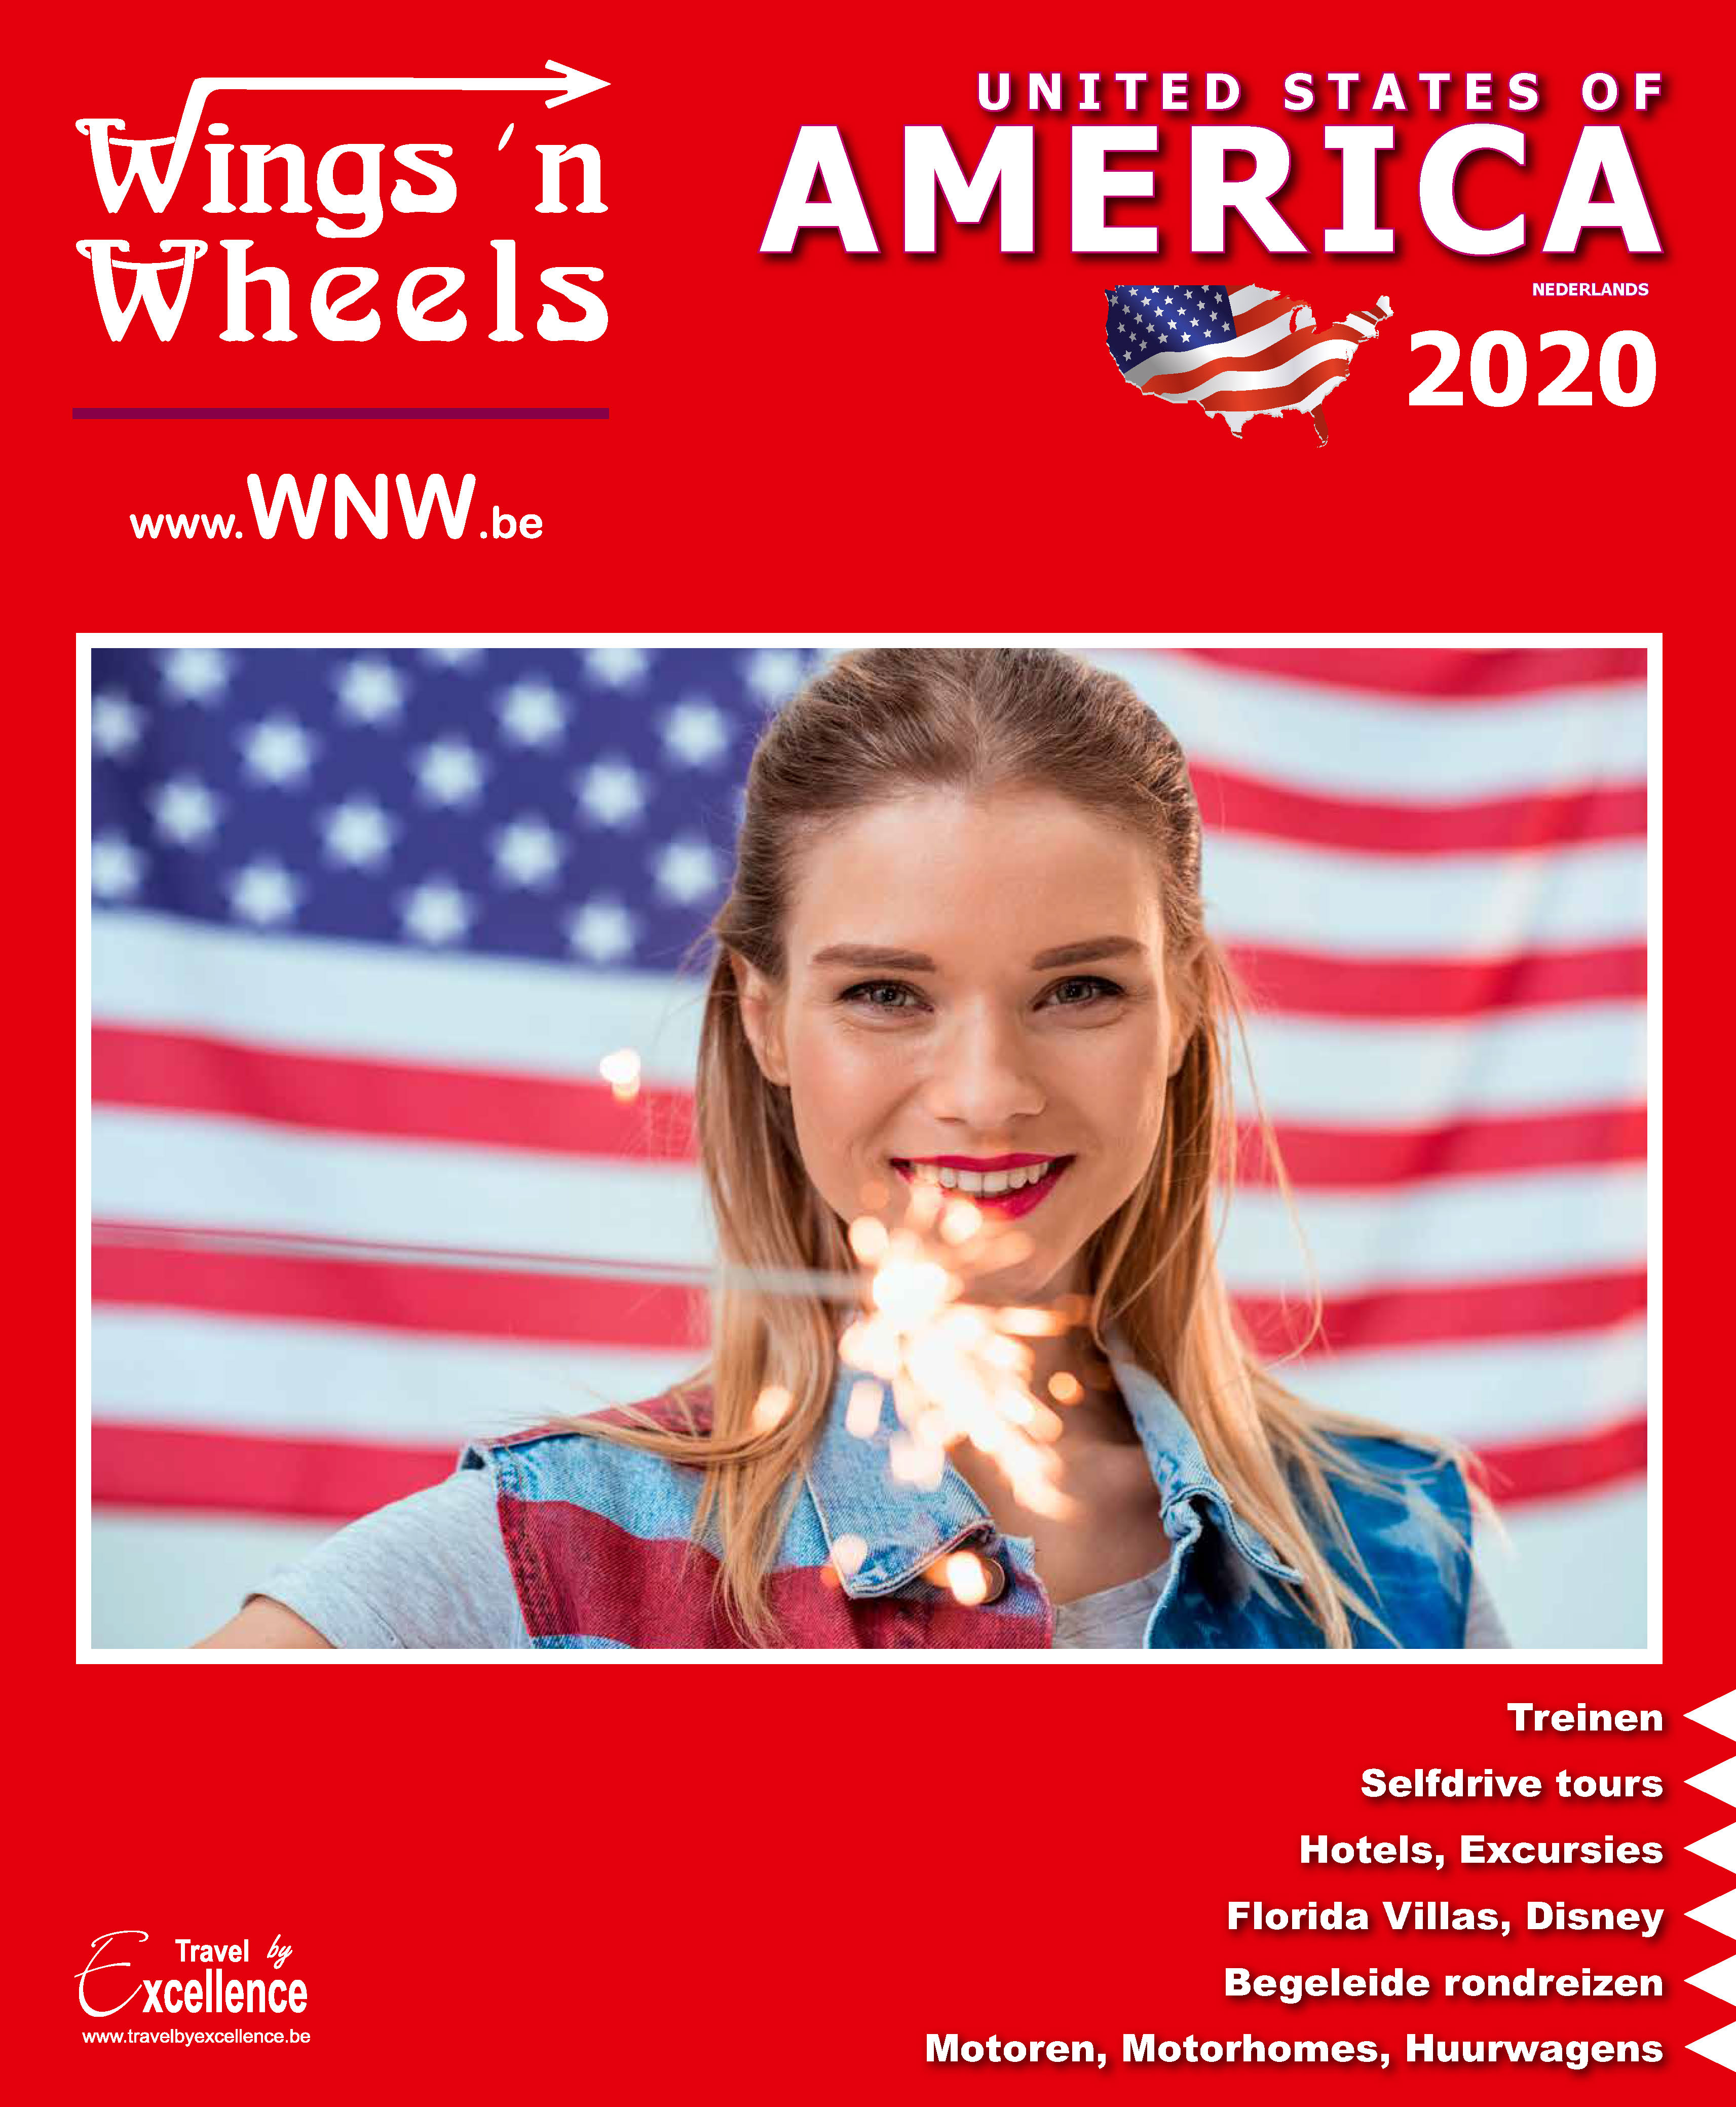 Wings 'n Wheels America home page